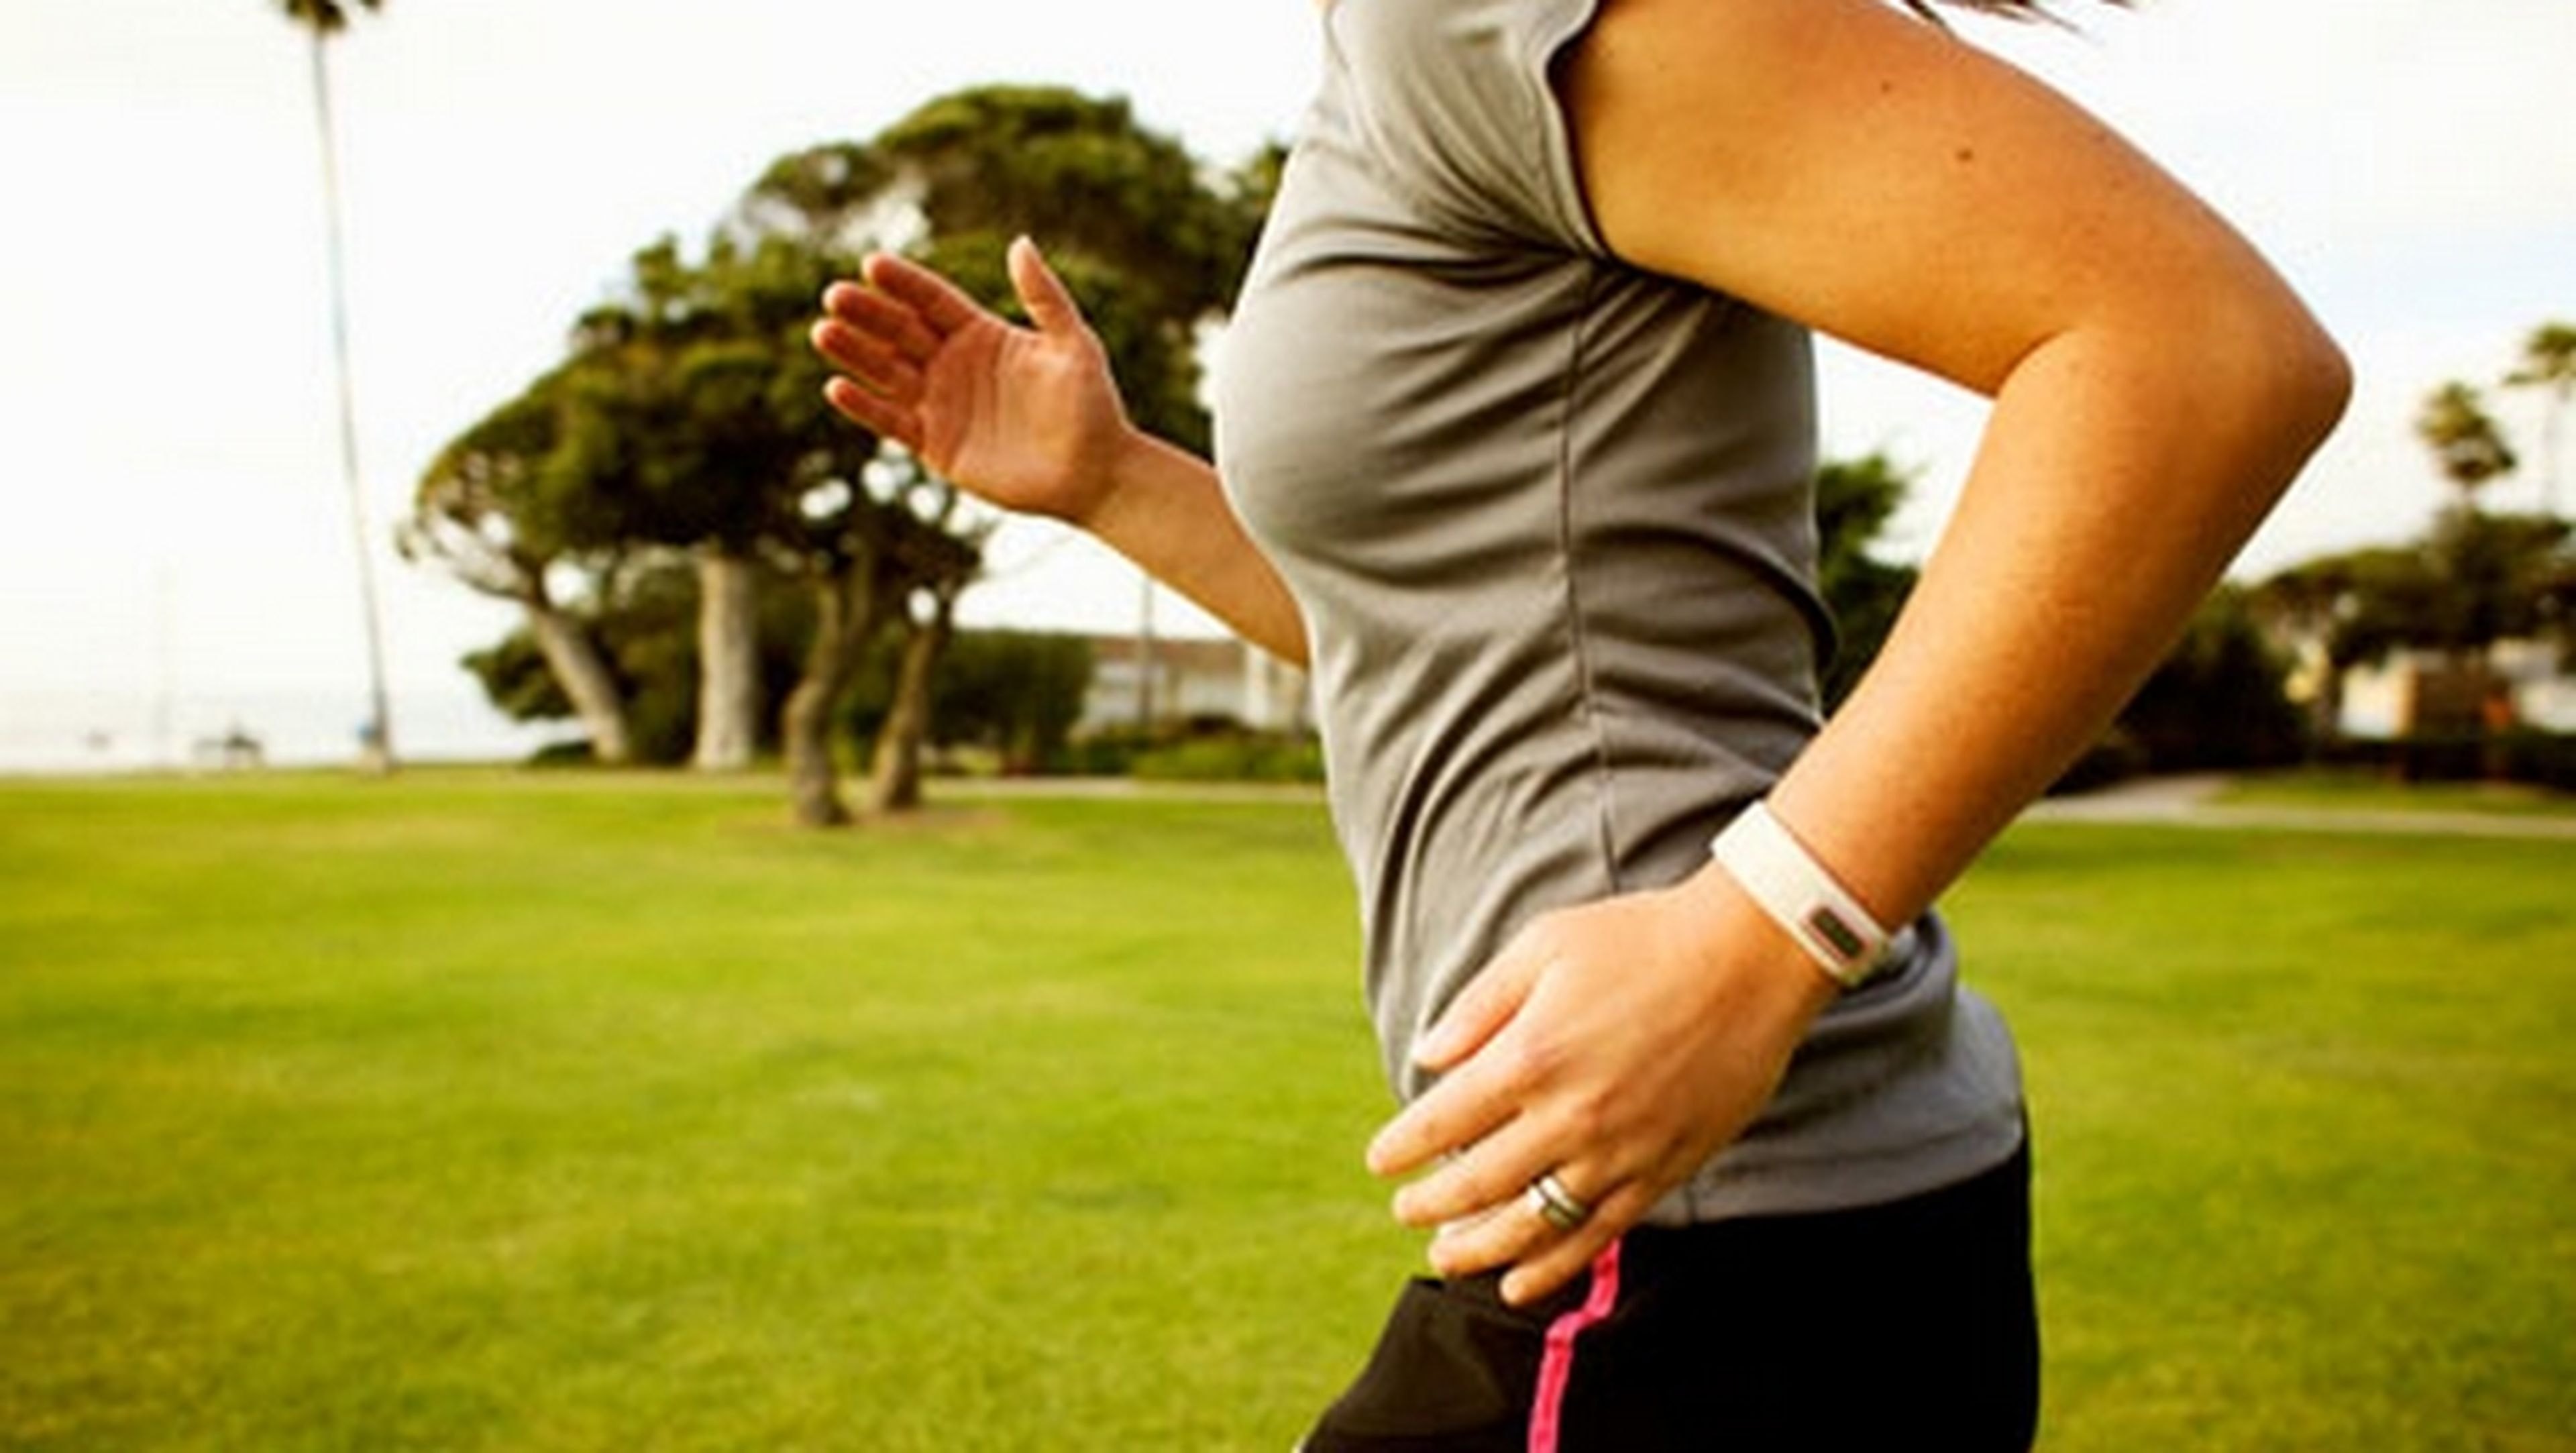 ¿Son precisos los trackers de actividad y las pulseras de fitness? Según un estudio de The Telegraph, no mucho...